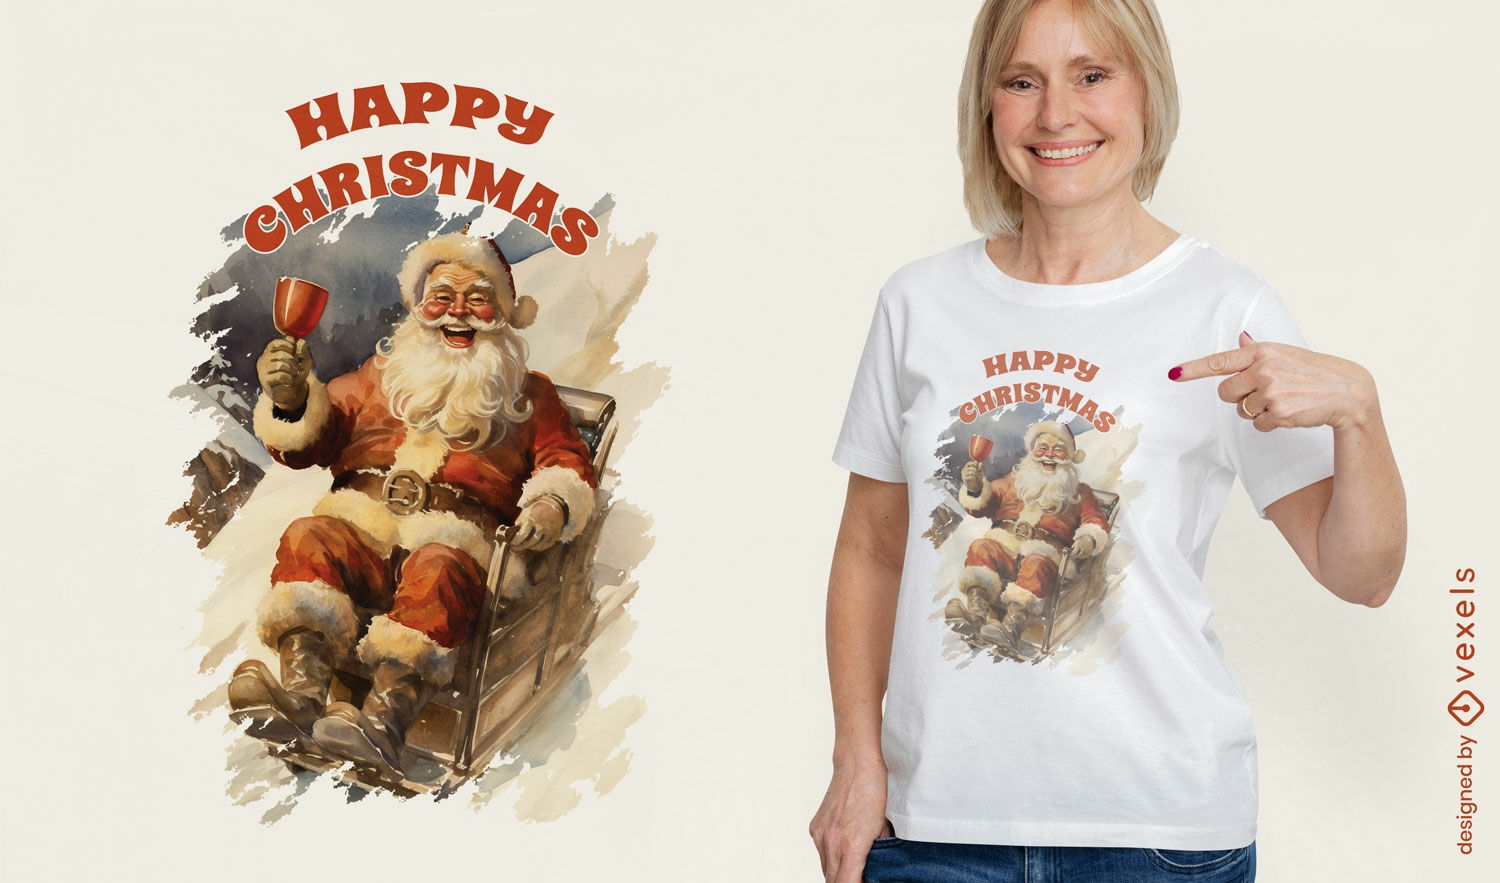 Celebrando el dise?o de camiseta de Santa Claus.